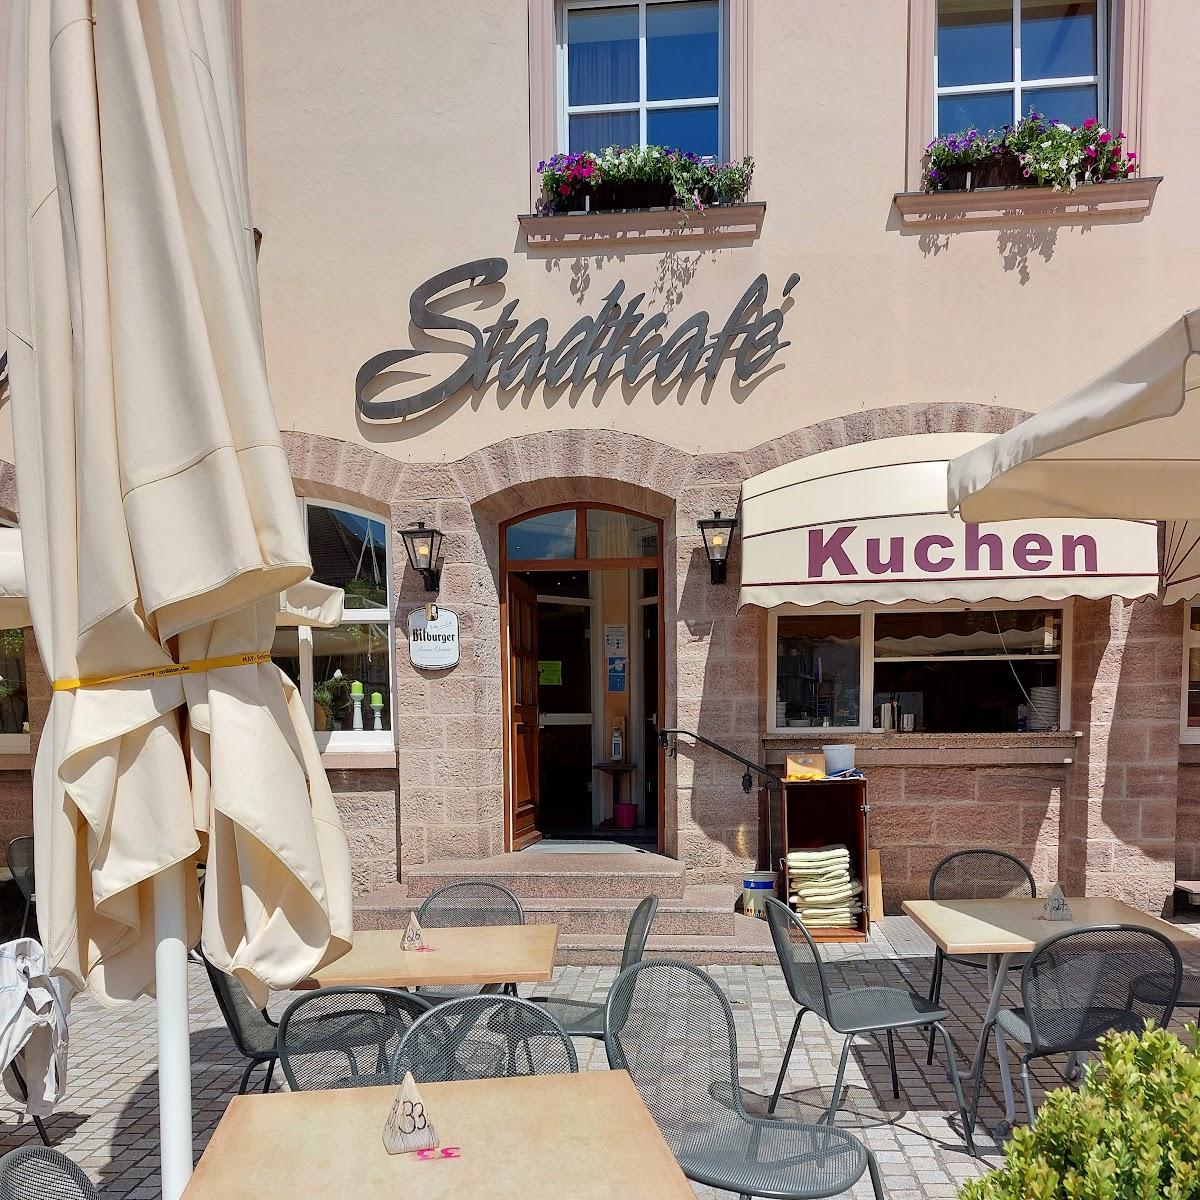 Restaurant "Stadtcaffee" in Hammelburg